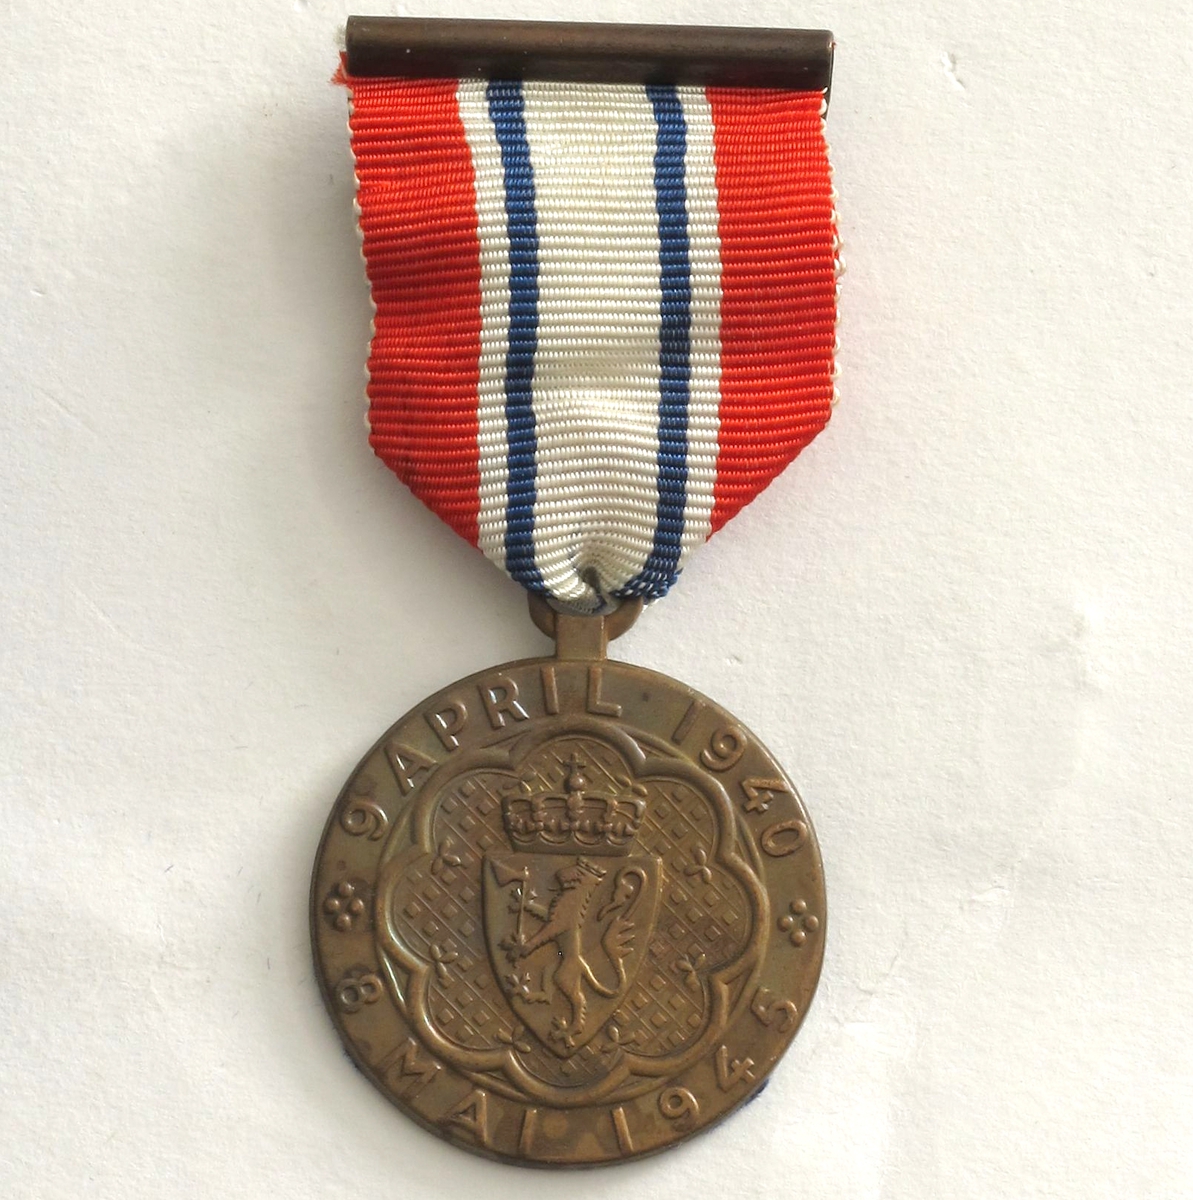 Medalje er i bronse, på advers er riksvåpenet med omskrift «9 APRIL 1940 * 8 MAI 1945 *». På revers kongeflagget, handelsflagg og orlogsflagg og innskrift «DELTAGER I KAMPEN». Motivet er omgitt av en lenke.

Medaljen produsert av firma J. Tostrup i Oslo i etterkrigstiden, mens nyere utgaver er produsert hos andre firmaer. 
Ledsagende brev er i A4 format, på Departementets brevark. 

DELER:  a) Medalje  b) Ledsagende brev, undertegnet av ekspedisjonssjef i Forsvarsdep.